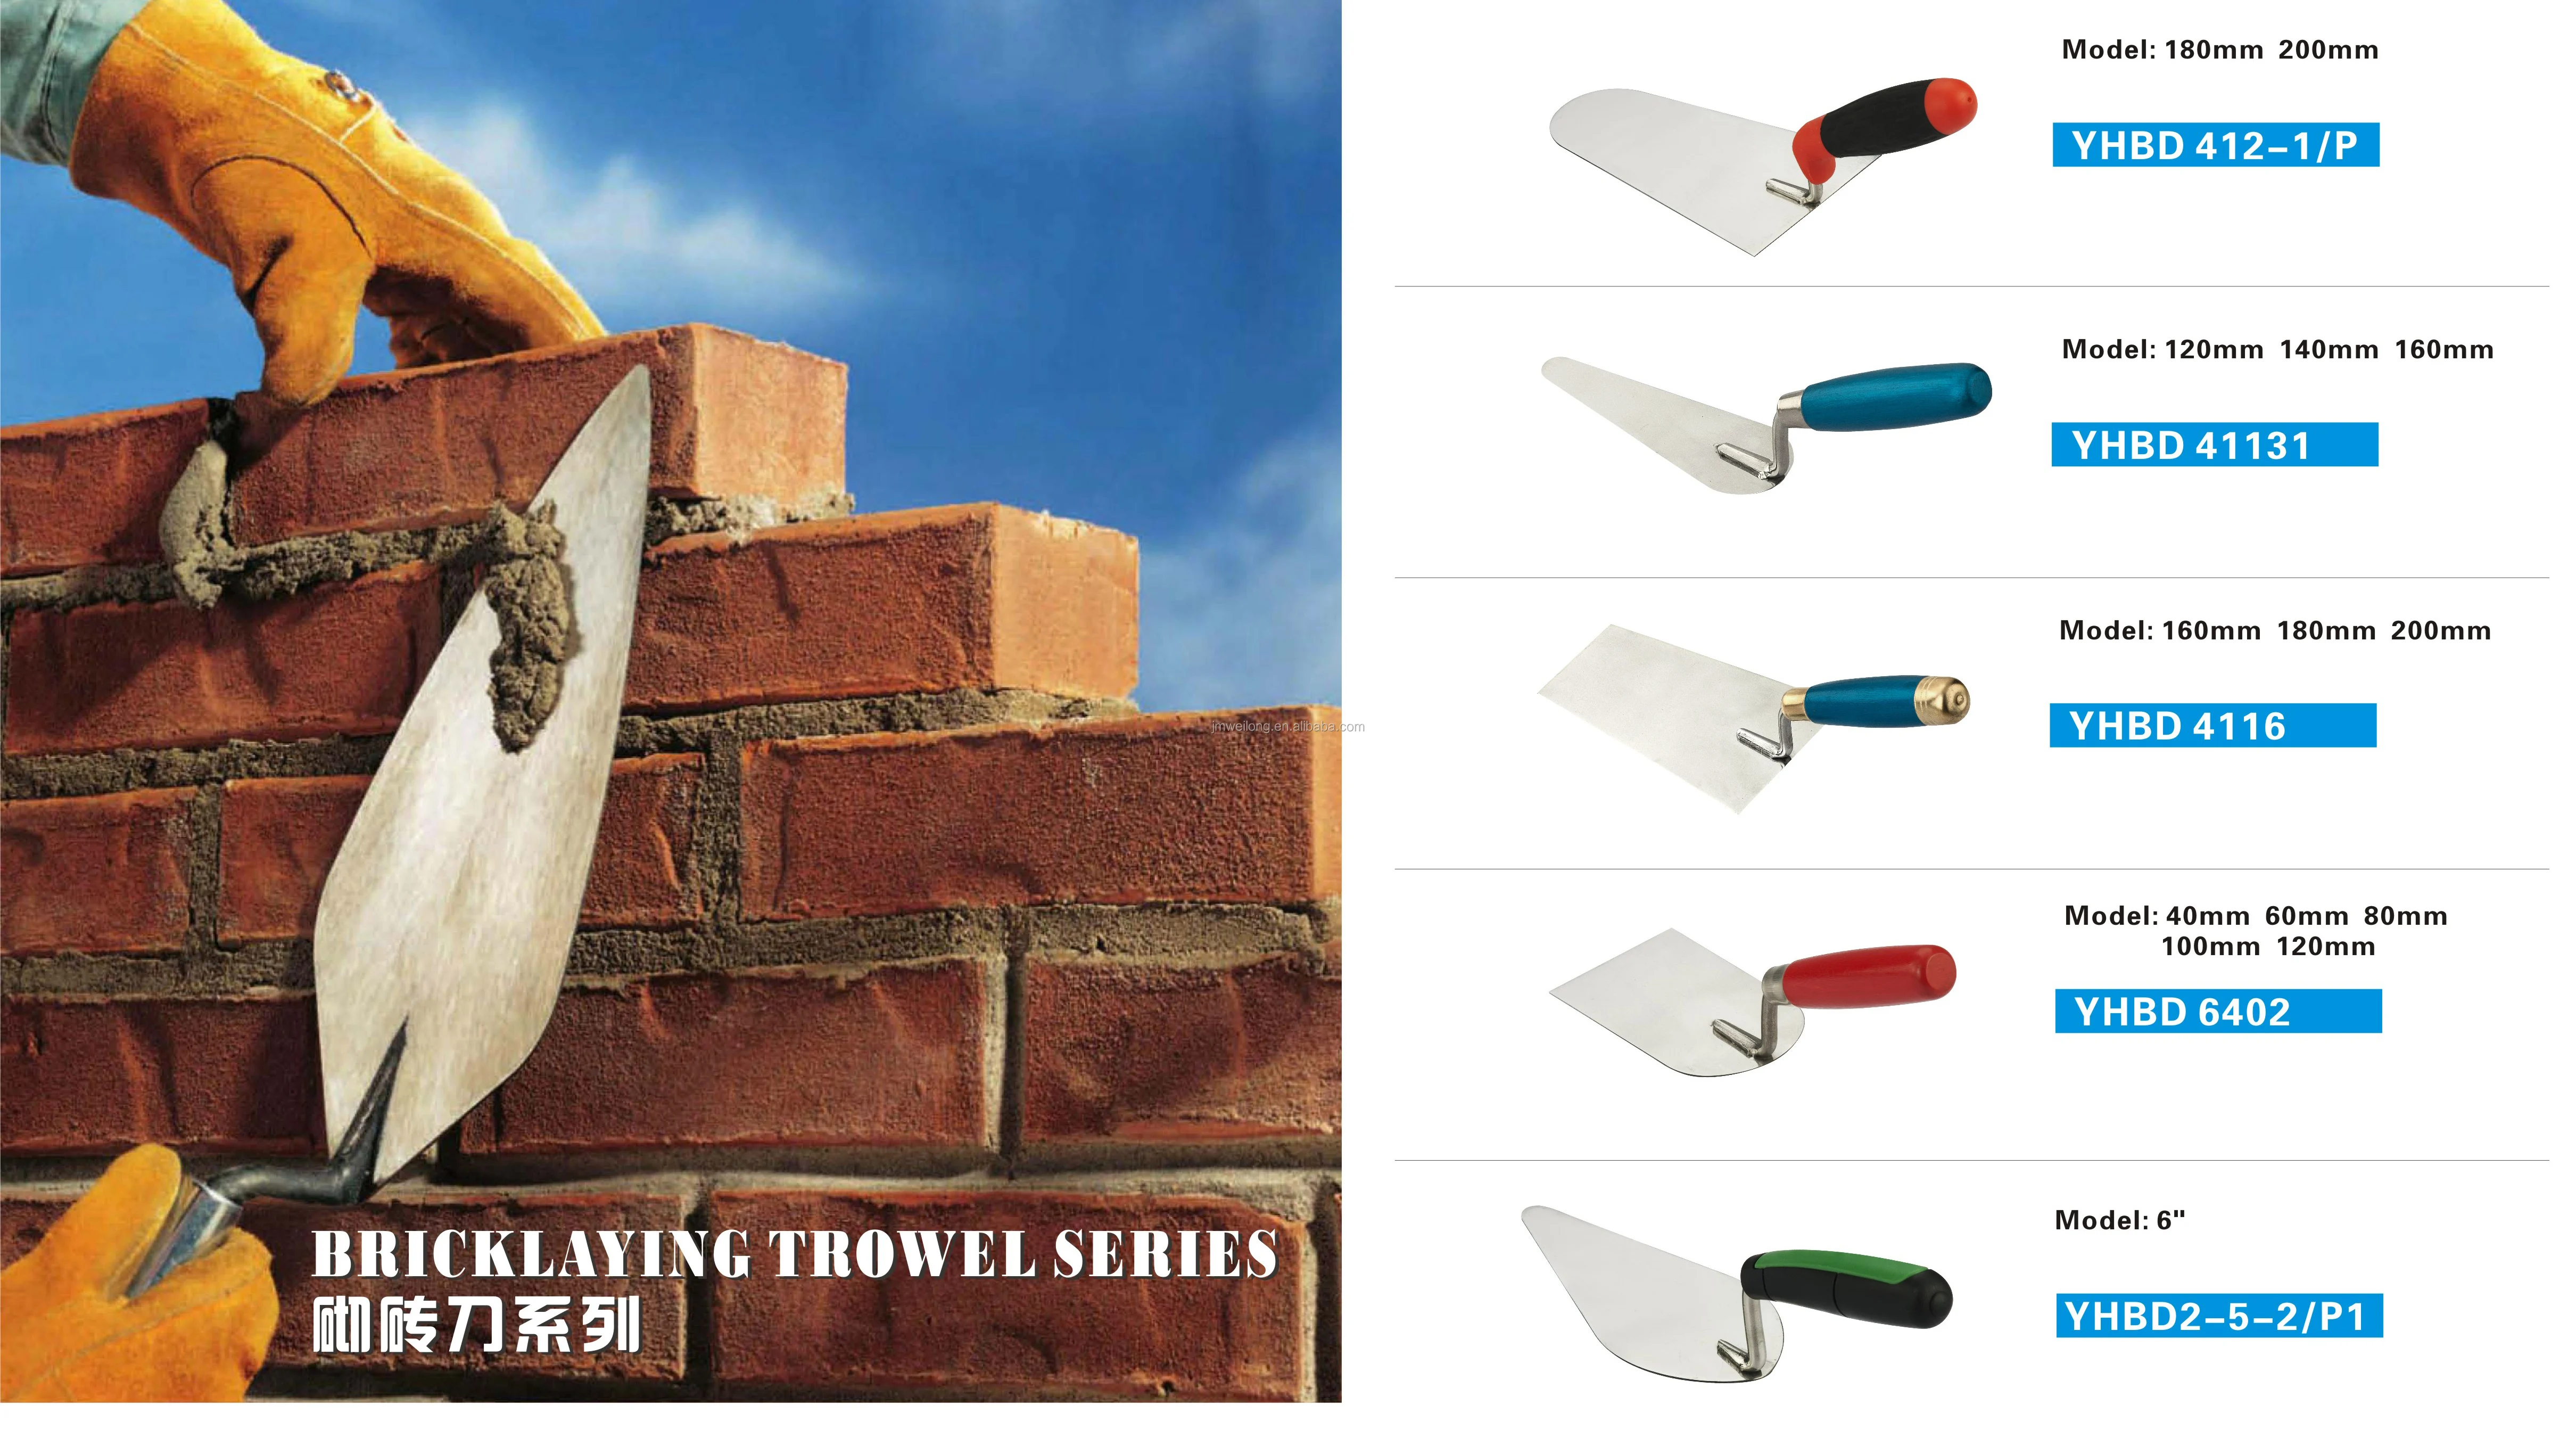 Bricklaying Trowel Series.jpg